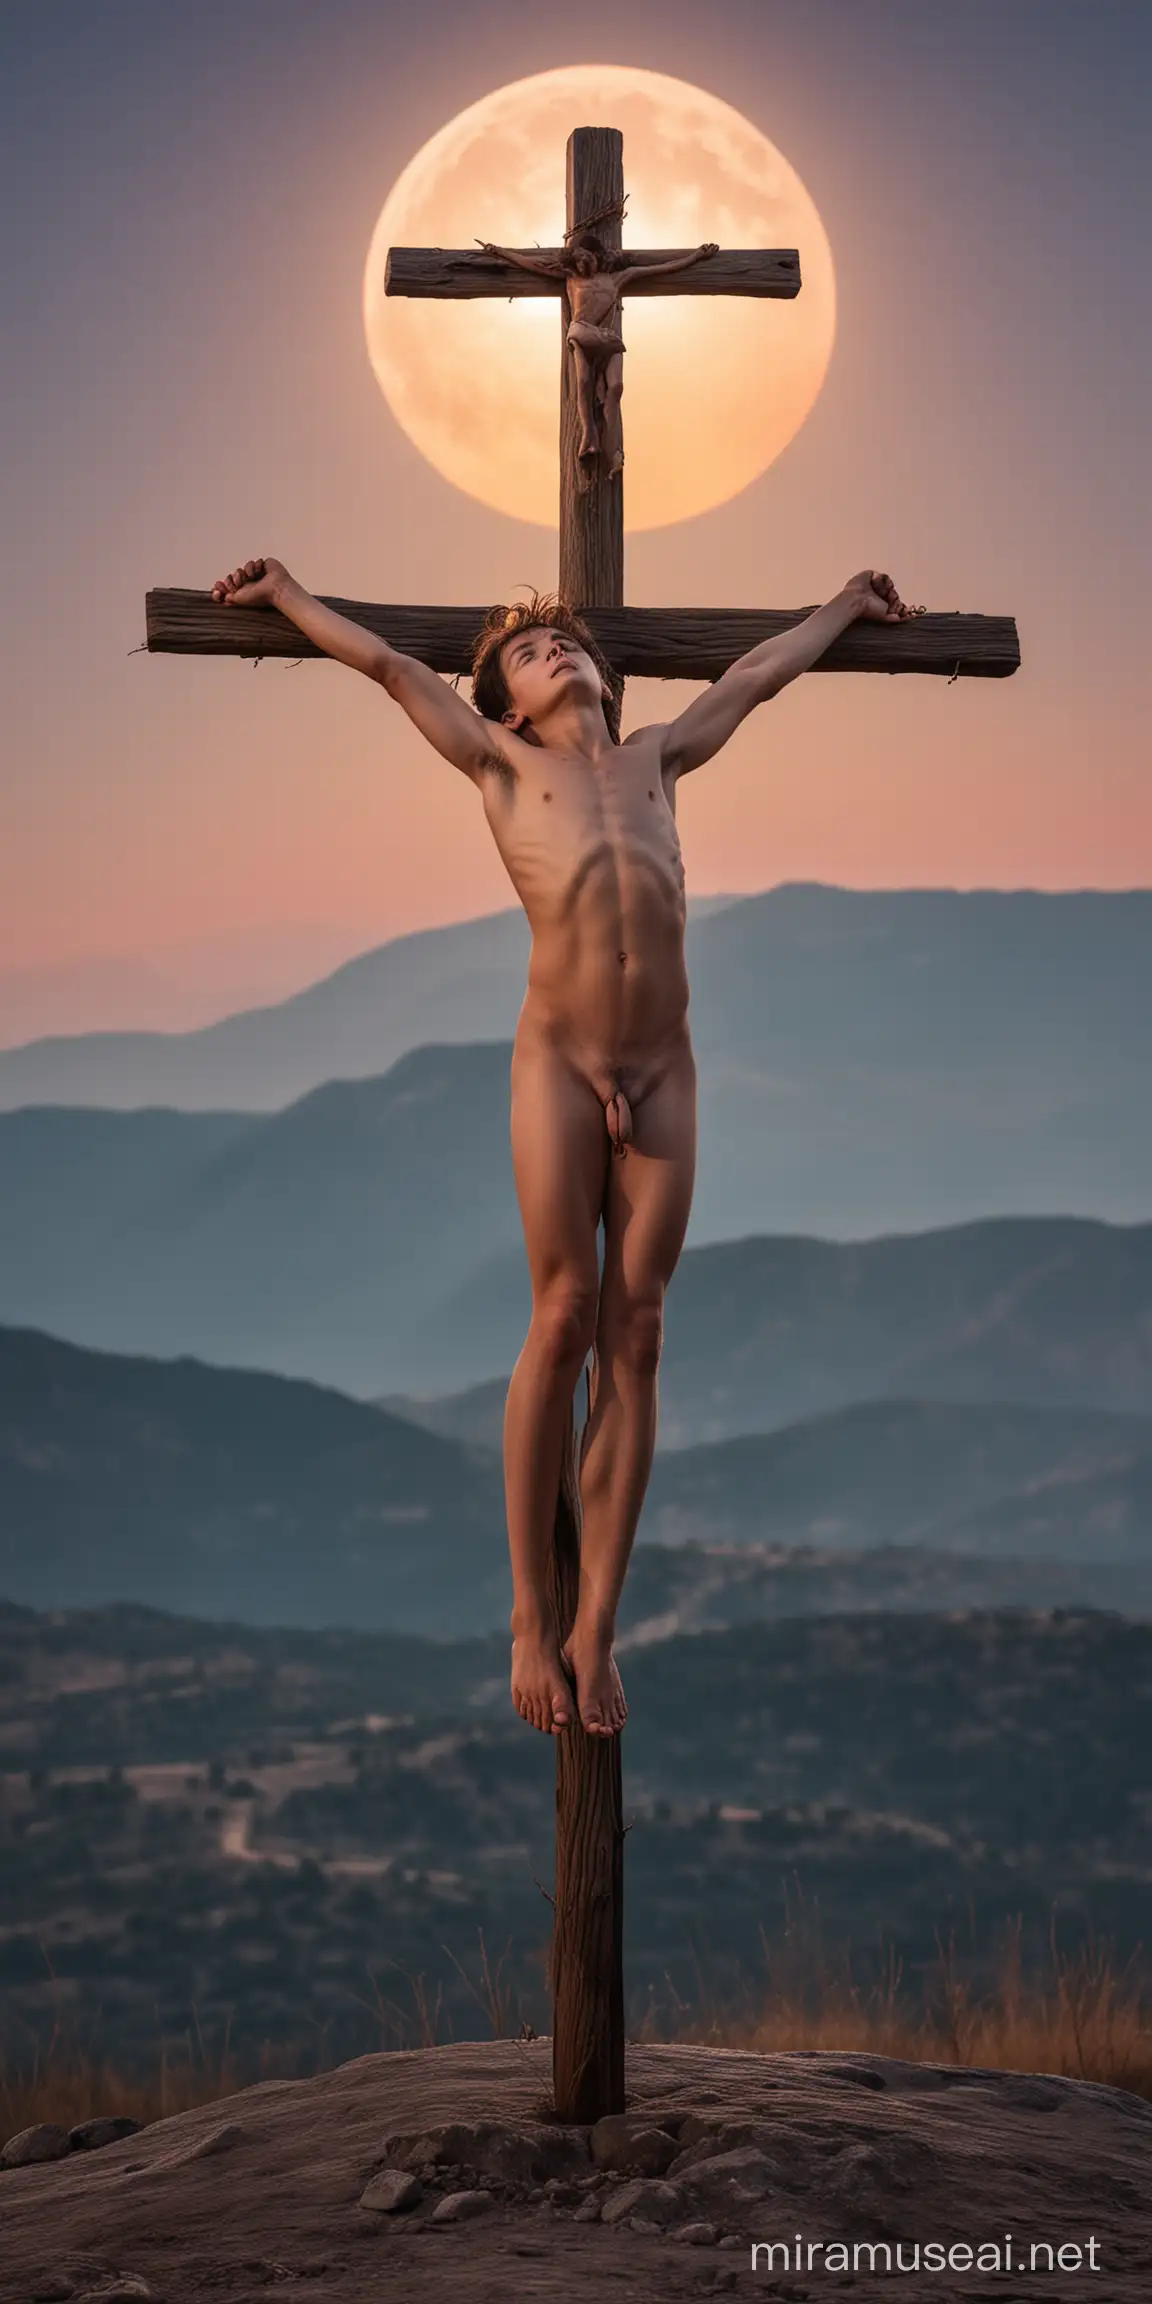 Rapaz crucificado (pregado na cruz) sem nenhuma roupa, pelado, sem panos, nu, visão frontal, ambiente montanhoso, eclipse solar (lua encobrindo o sol) iluminação de anoitecer, colorido.